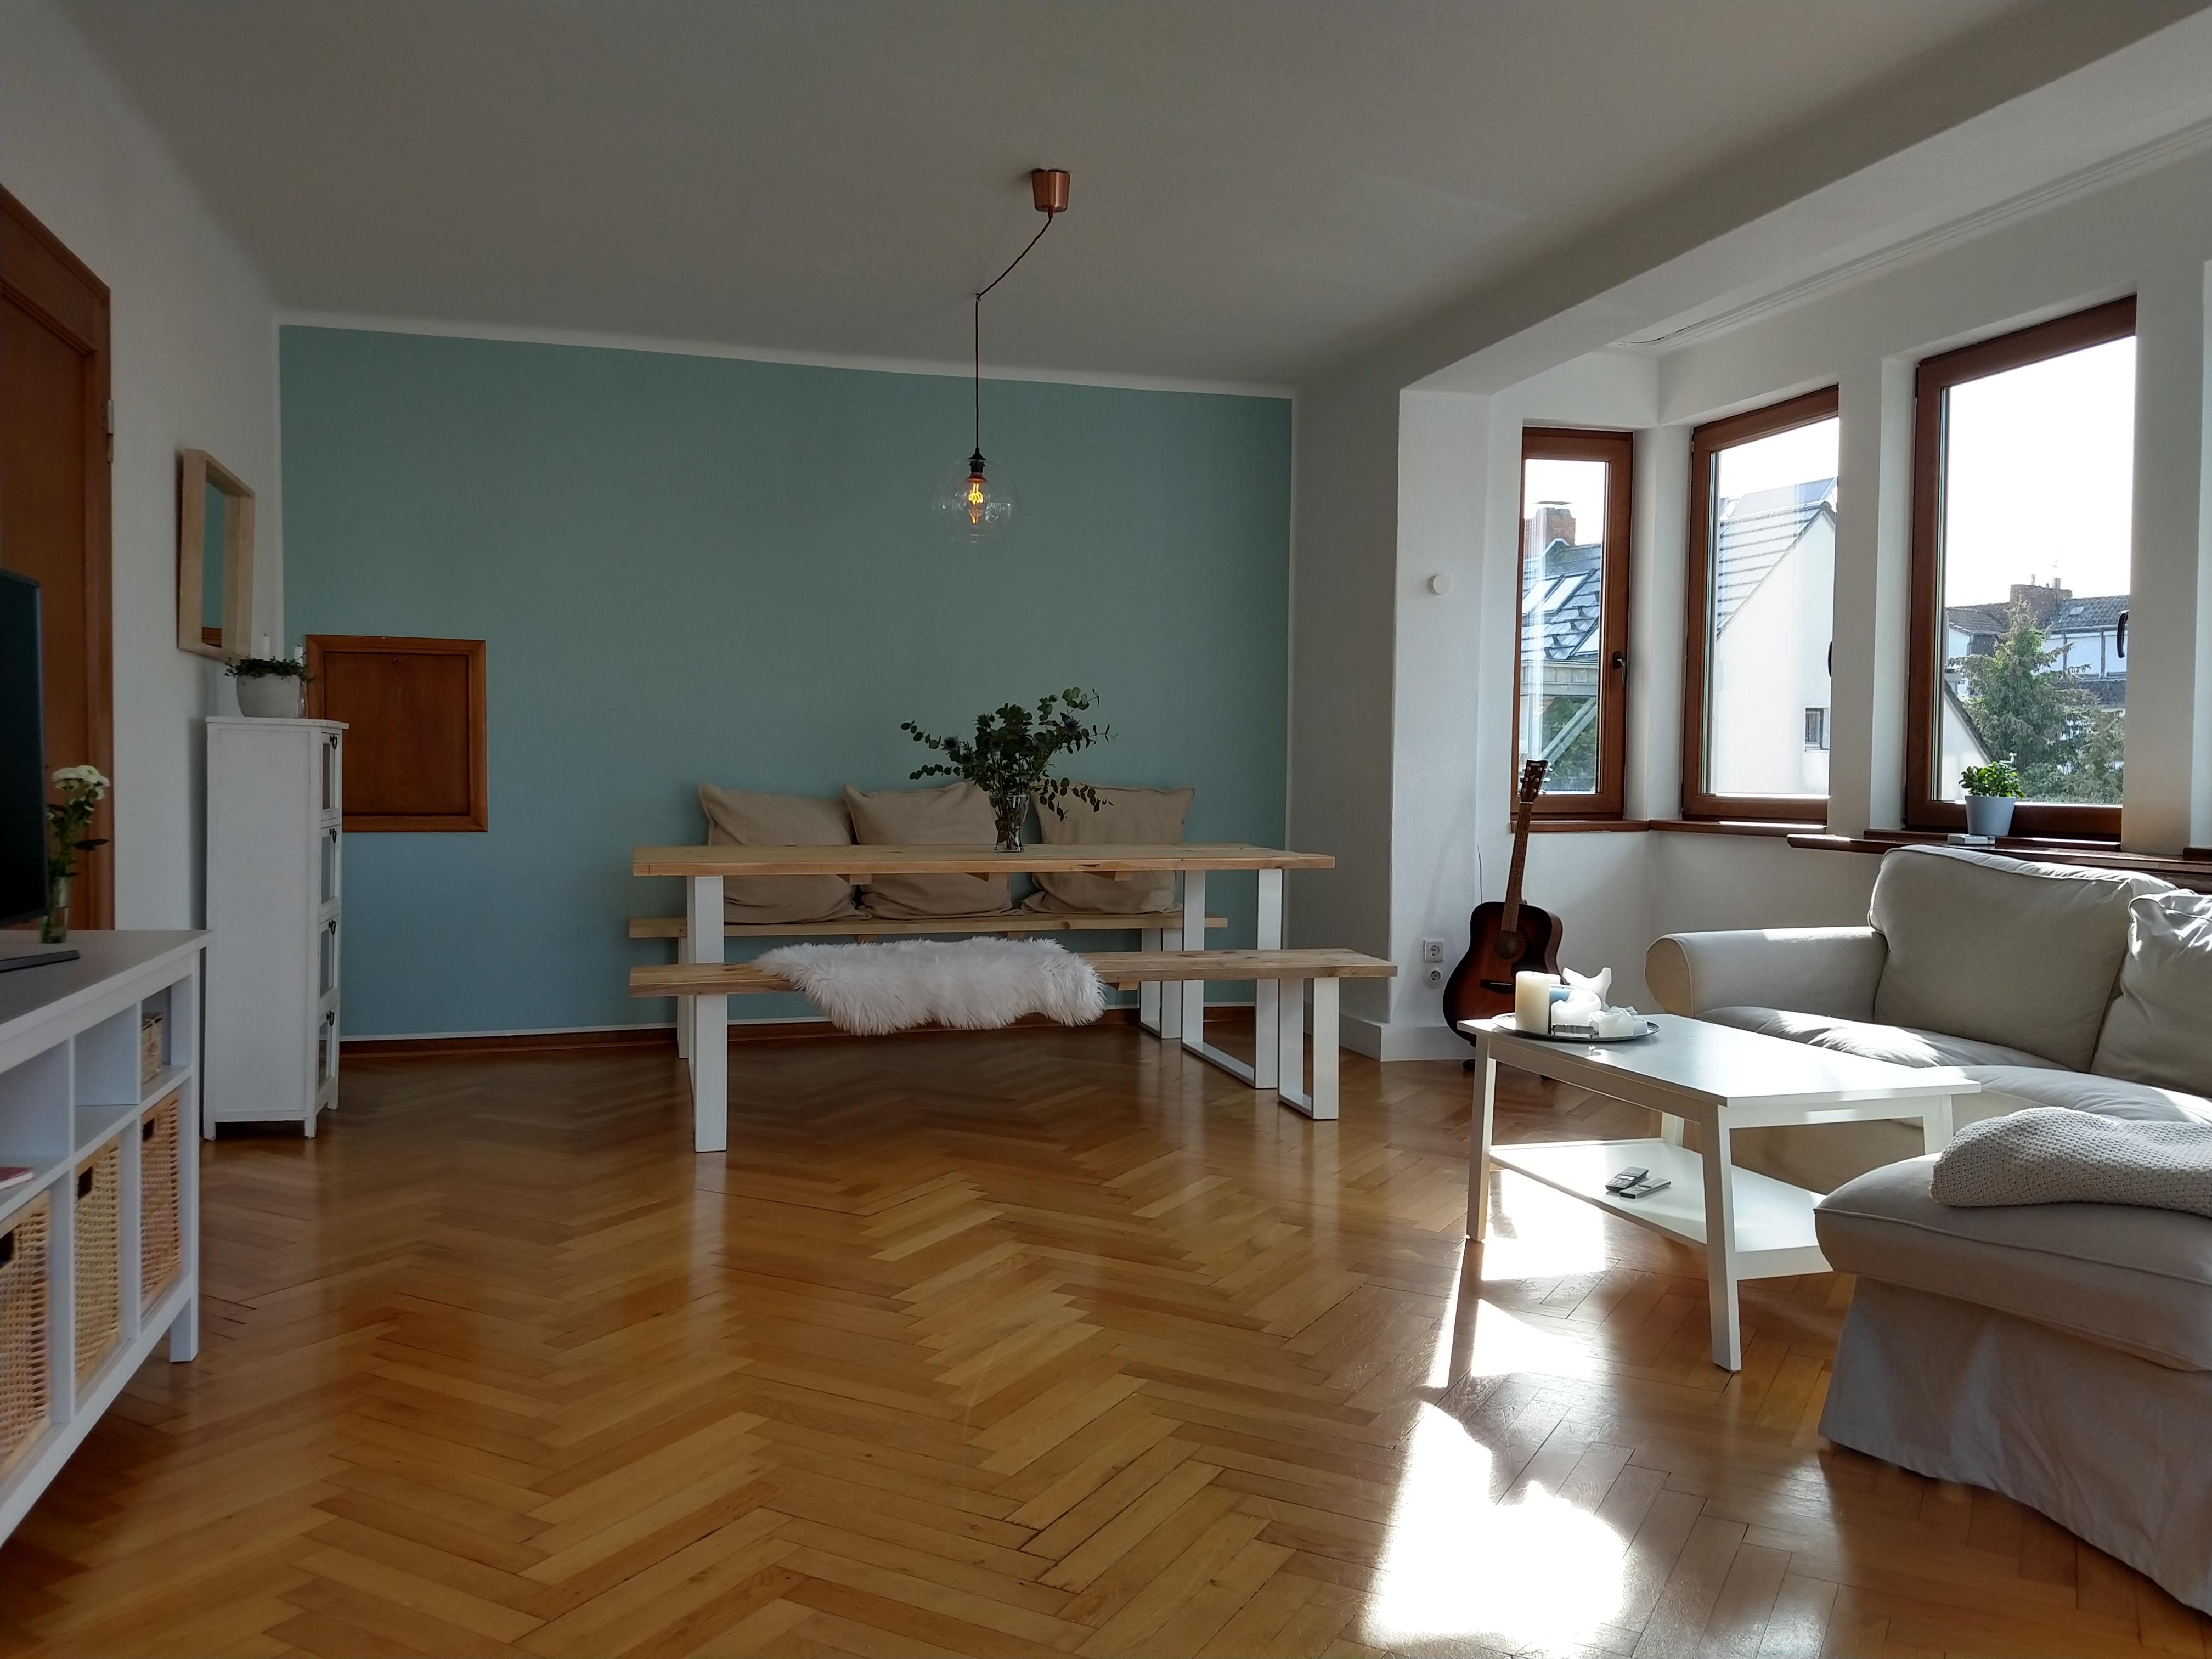 Vor Kurzem sind wir umgezogen und ich liebe unser neues Wohnzimmer mit Weserblick #neuhier #wohnzimmer #Esstisch #diy